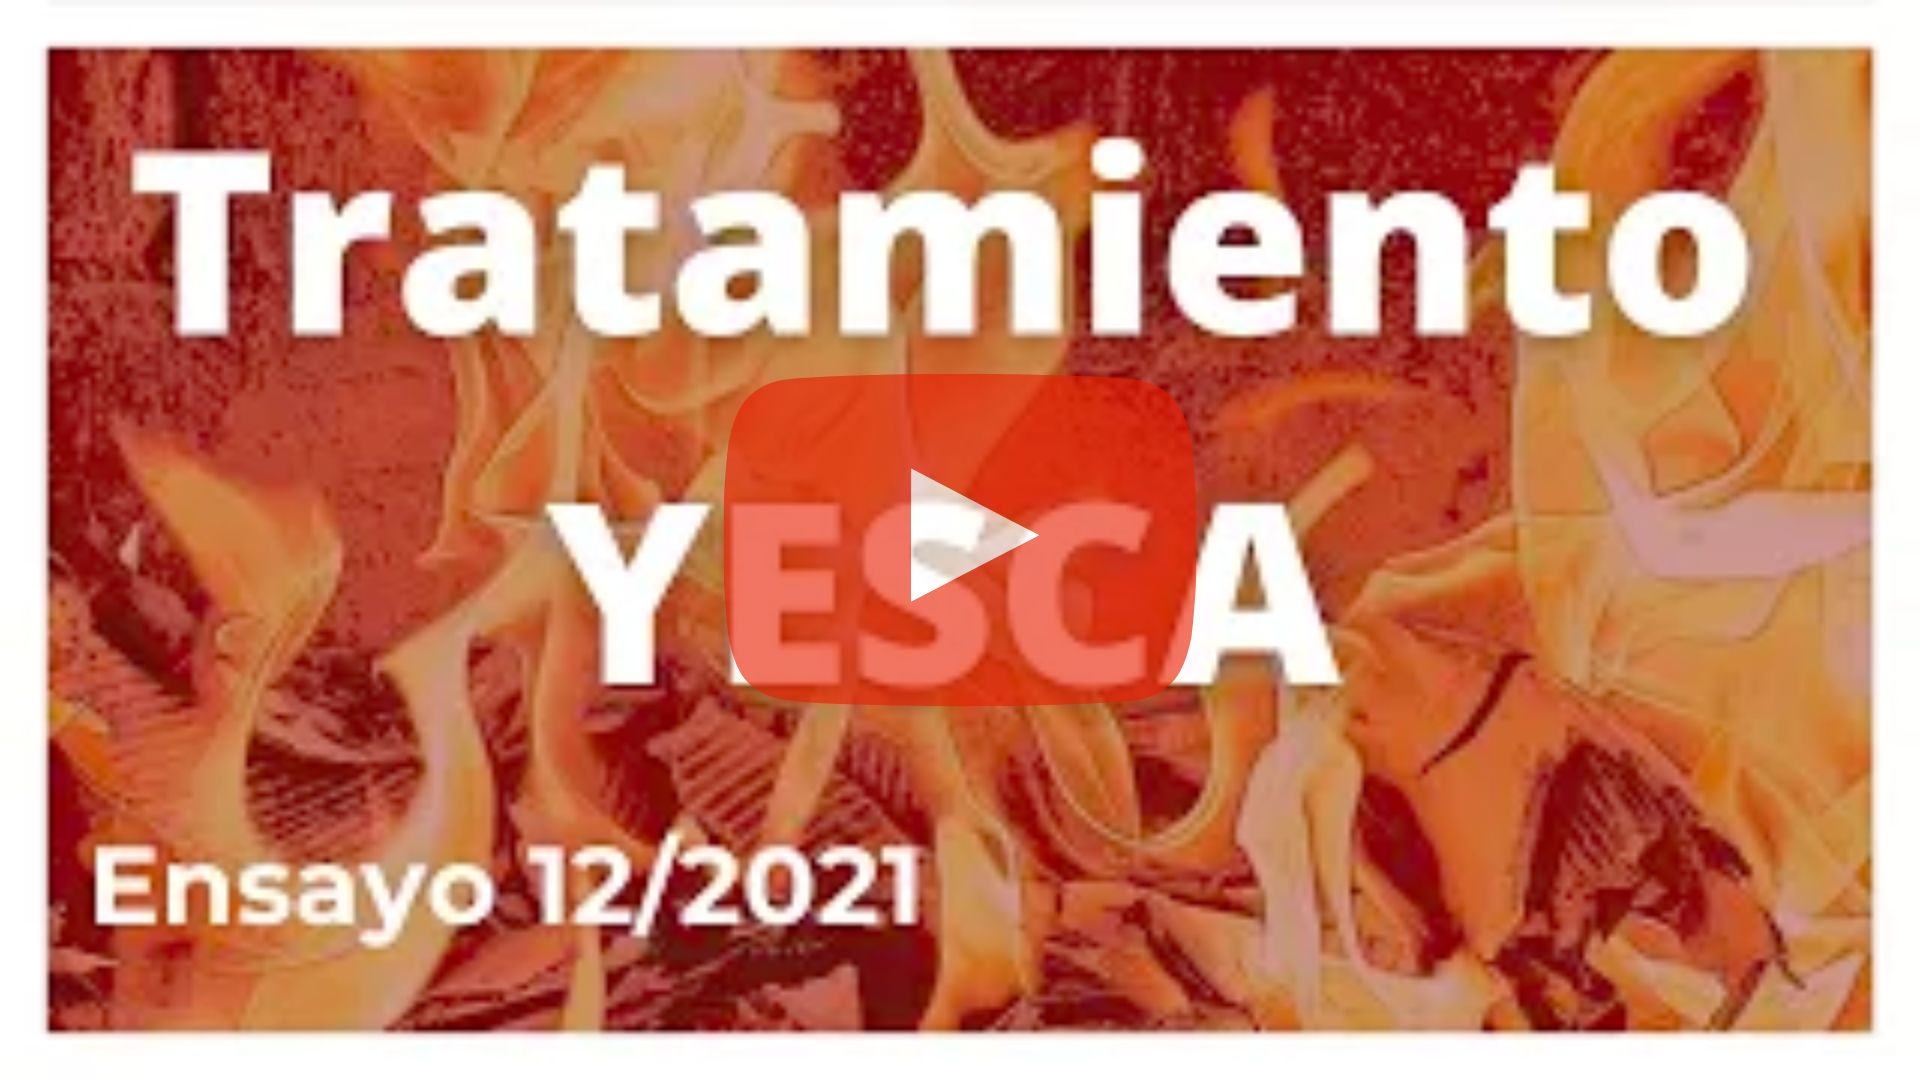 Ensayo 12/2021 Bolaños de Calatrava, un vídeo para mostrar la eficacia del tratamiento con YesKaP Forma parte de la red de ensayos verificados junto con COOVIMAG en Bolaños de Calatrava (Ciudad Real). Este vídeo puede tardar en cargar unos segundos, por favor, espere...